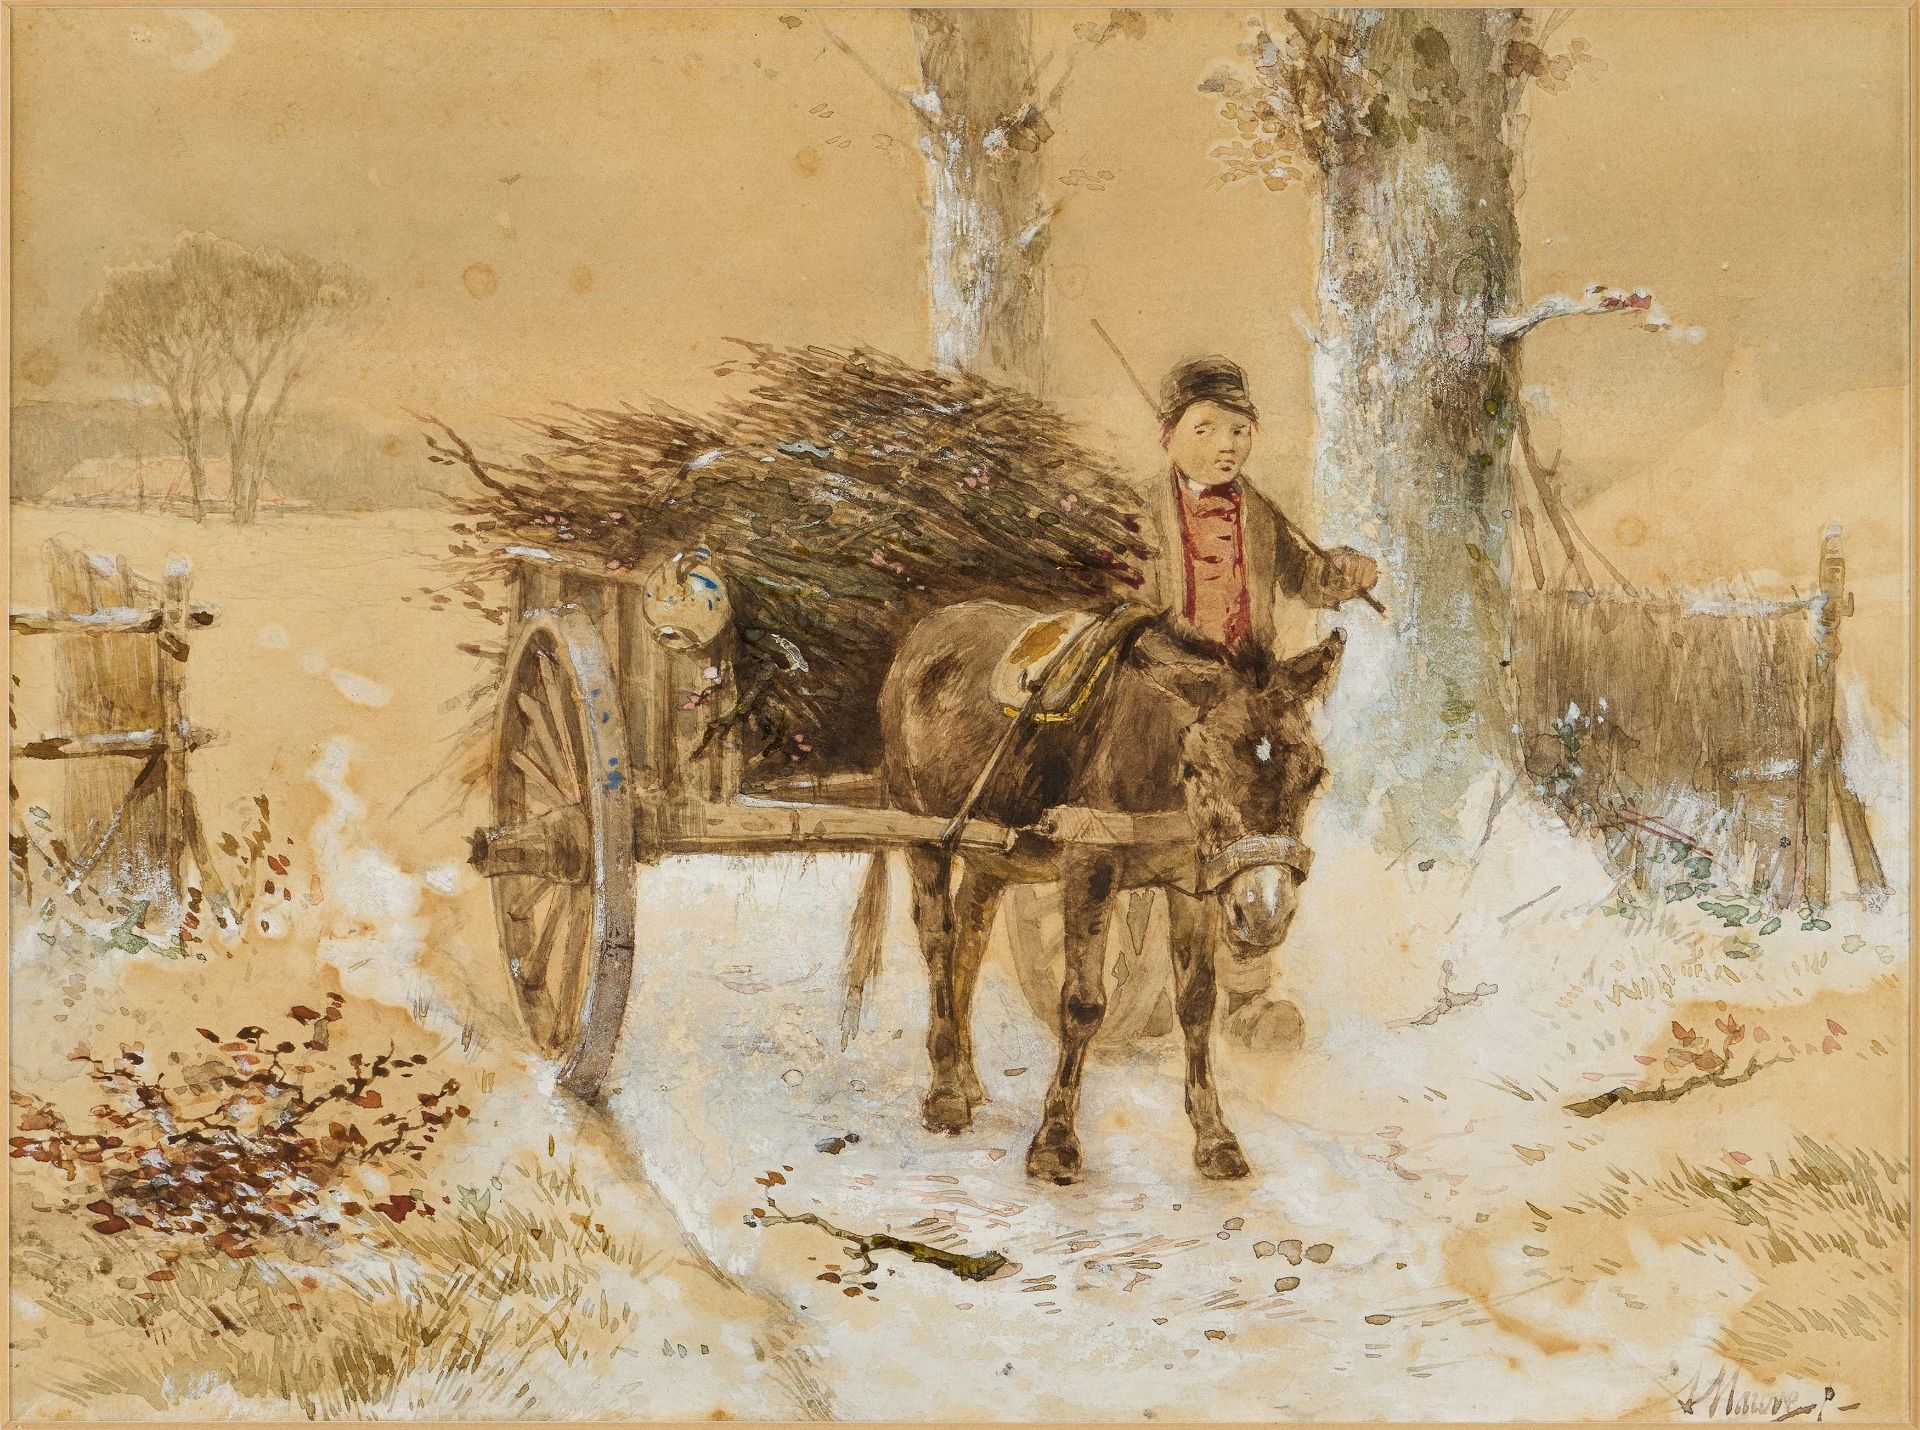 Anton Mauve: Boy with Donkey Cart